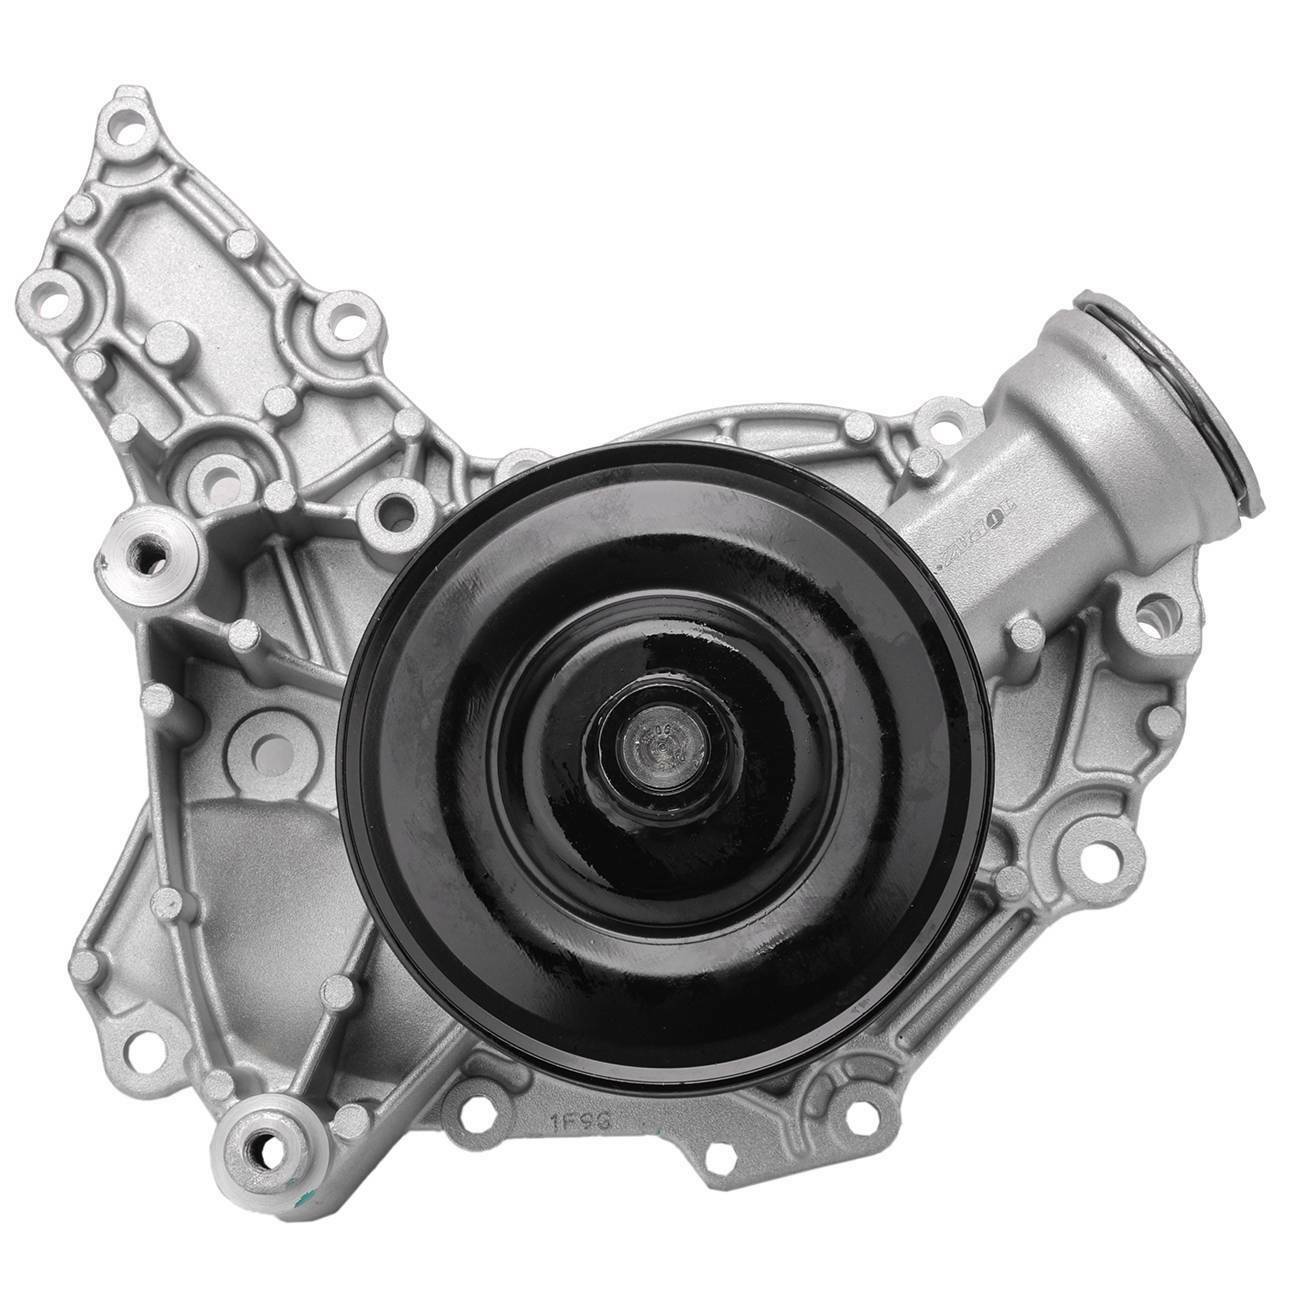 Engine Water Pump W/ Gaskets for Mercedes W211 S211 W212 W221 W164 X164 German Made